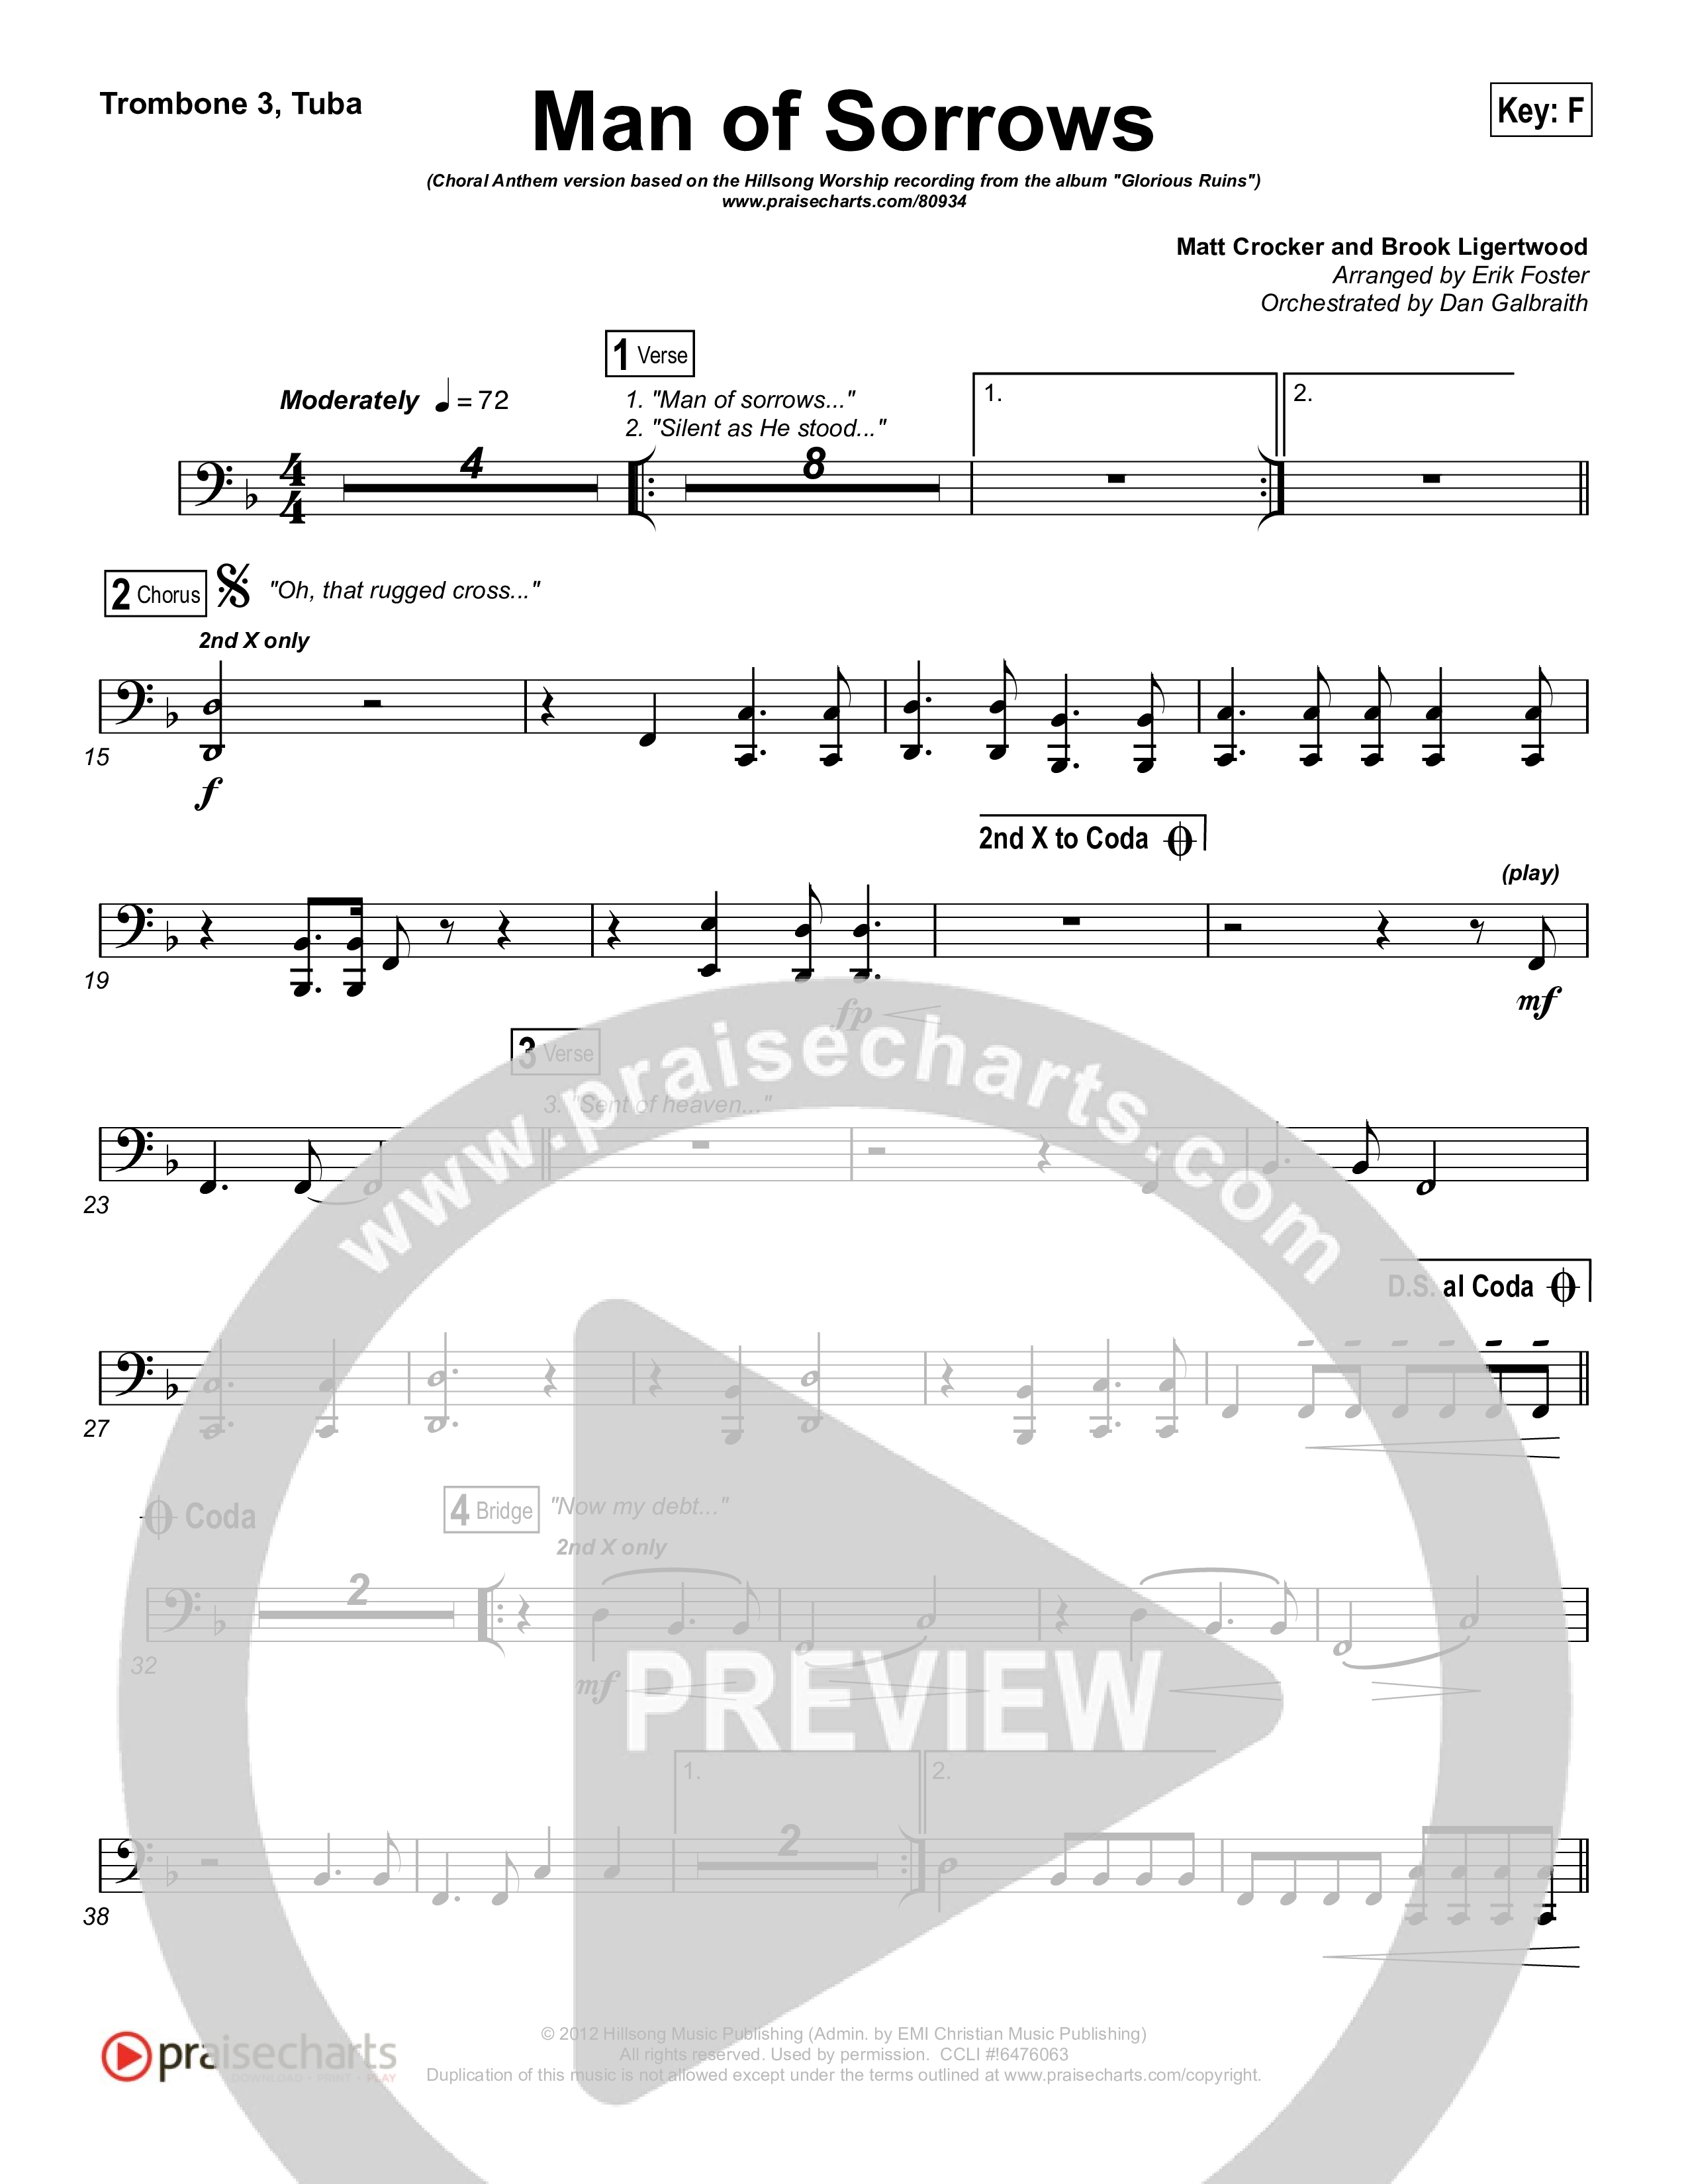 Man Of Sorrows (Choral Anthem SATB) Trombone 1,2 (Hillsong Worship / Arr. Erik Foster)